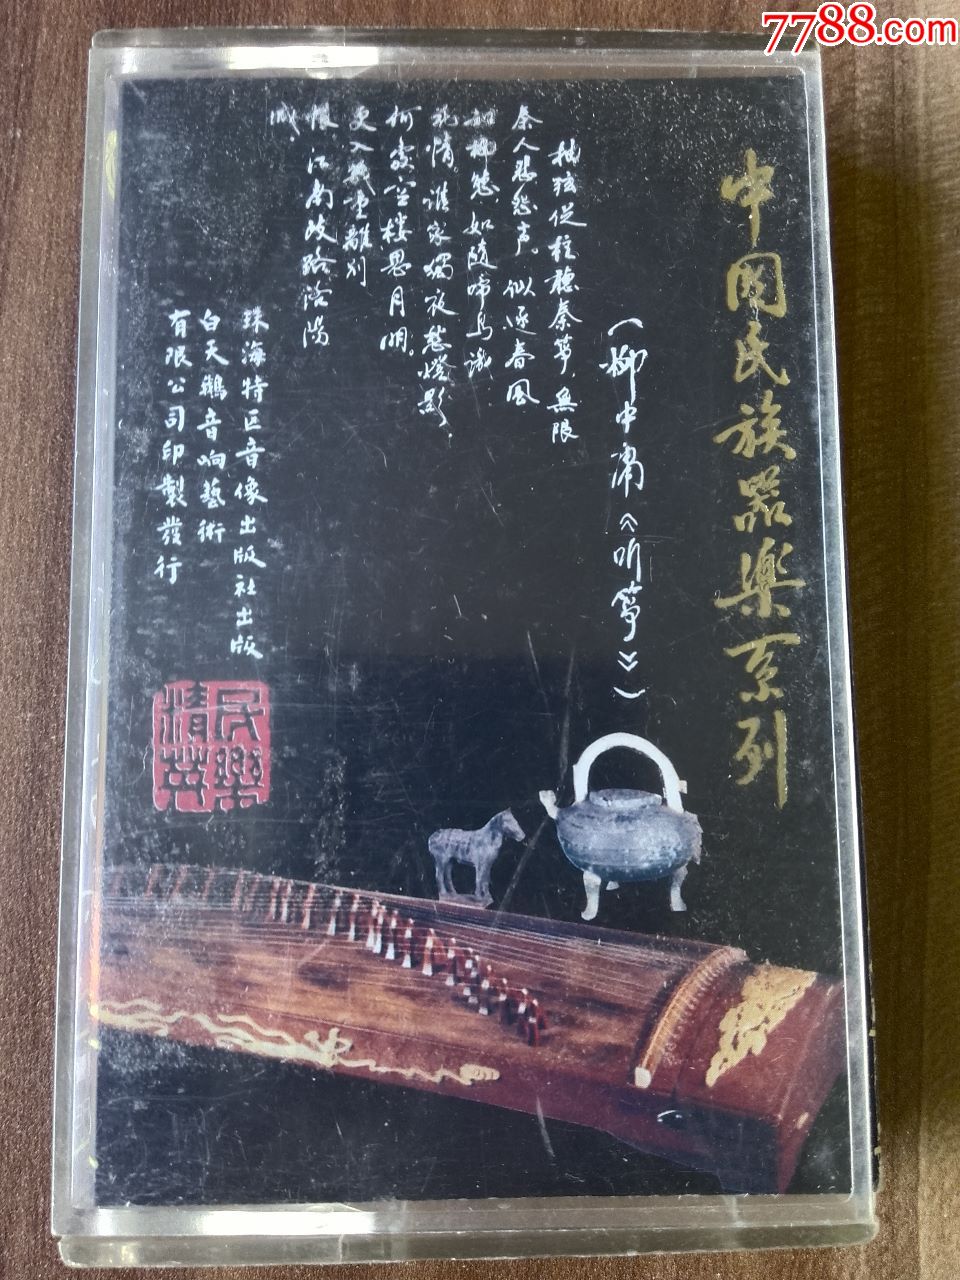 中国民族器乐系列《古装独奏传统曲目集》李炜